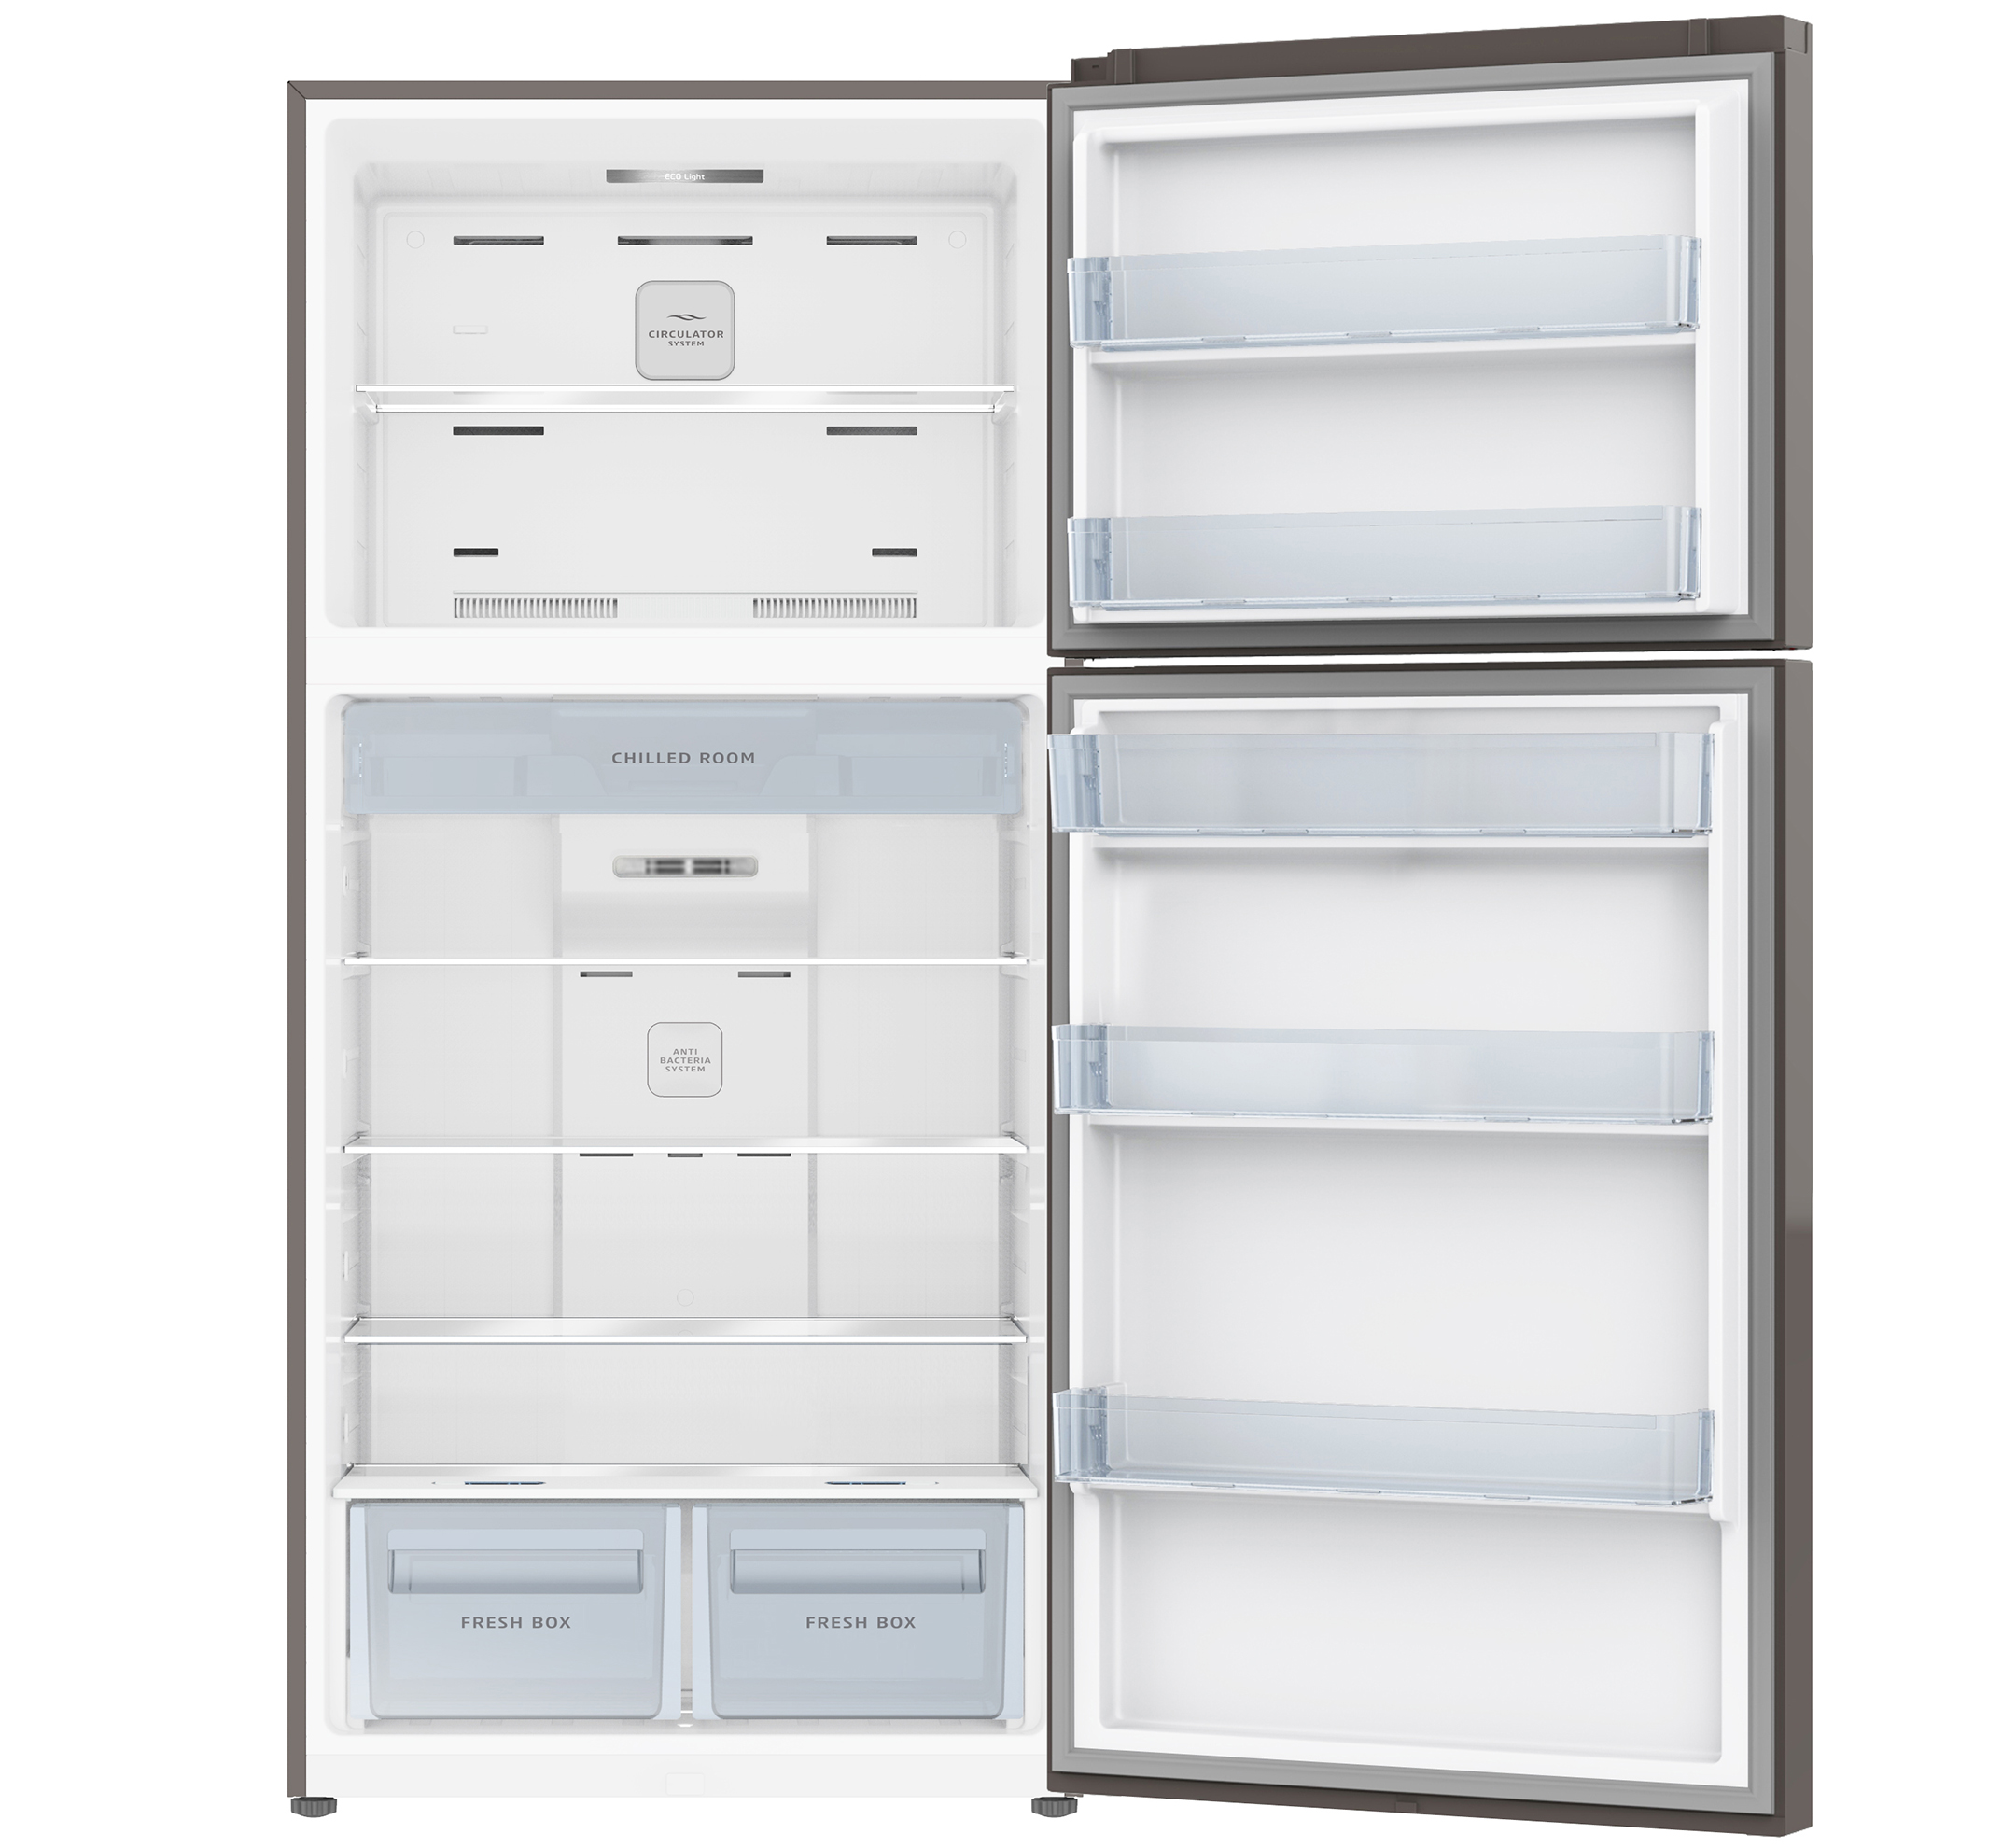 Refrigerator Double Door Model No. GR800KS Open